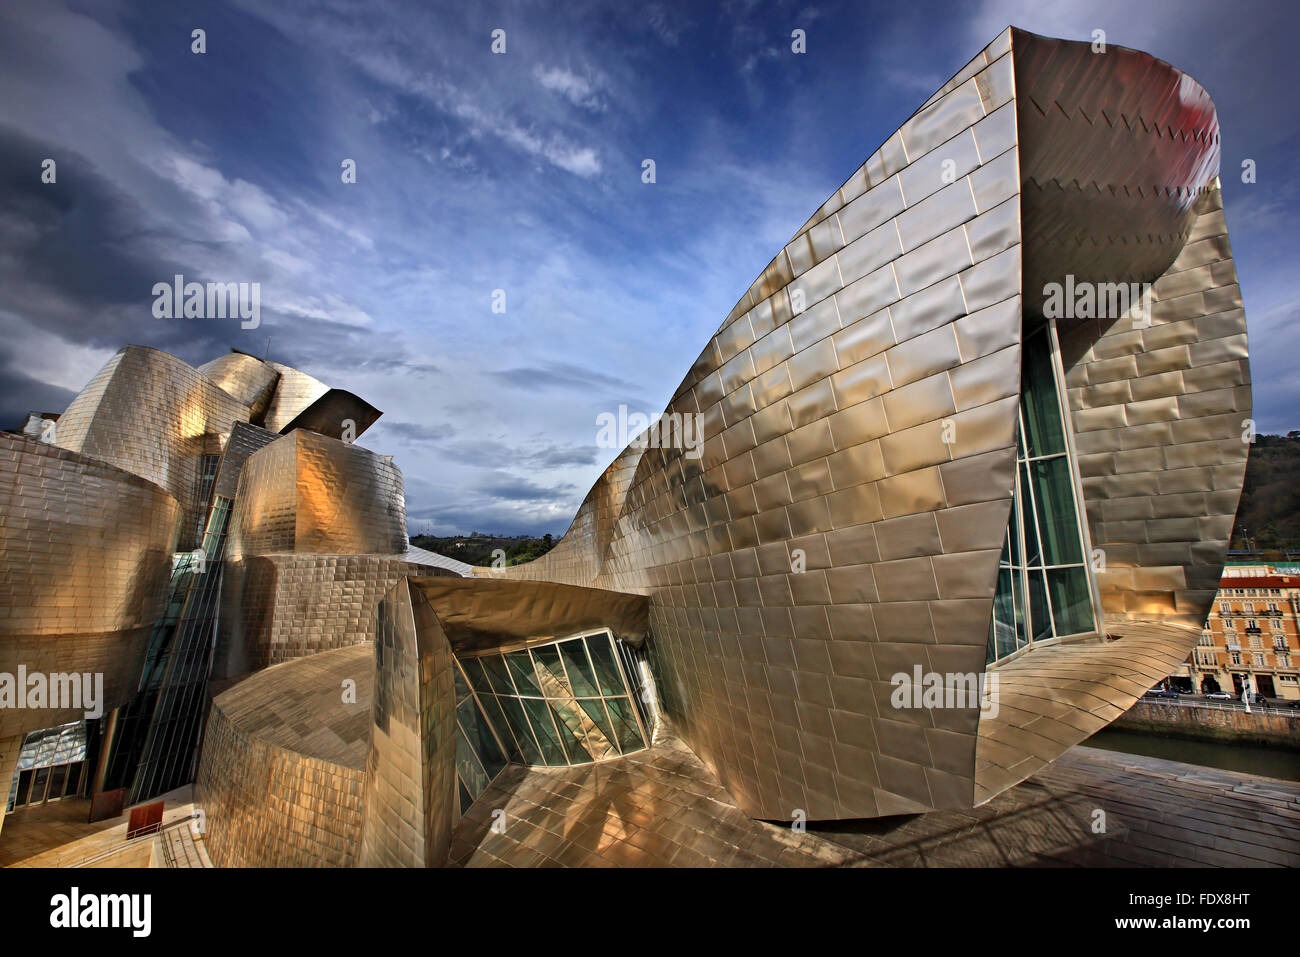 'Dettaglio' dal museo Guggenheim accanto al fiume Nervion (ria del Nervion), Bilbao, Paese Basco (Pais Vasco), Spagna. Foto Stock